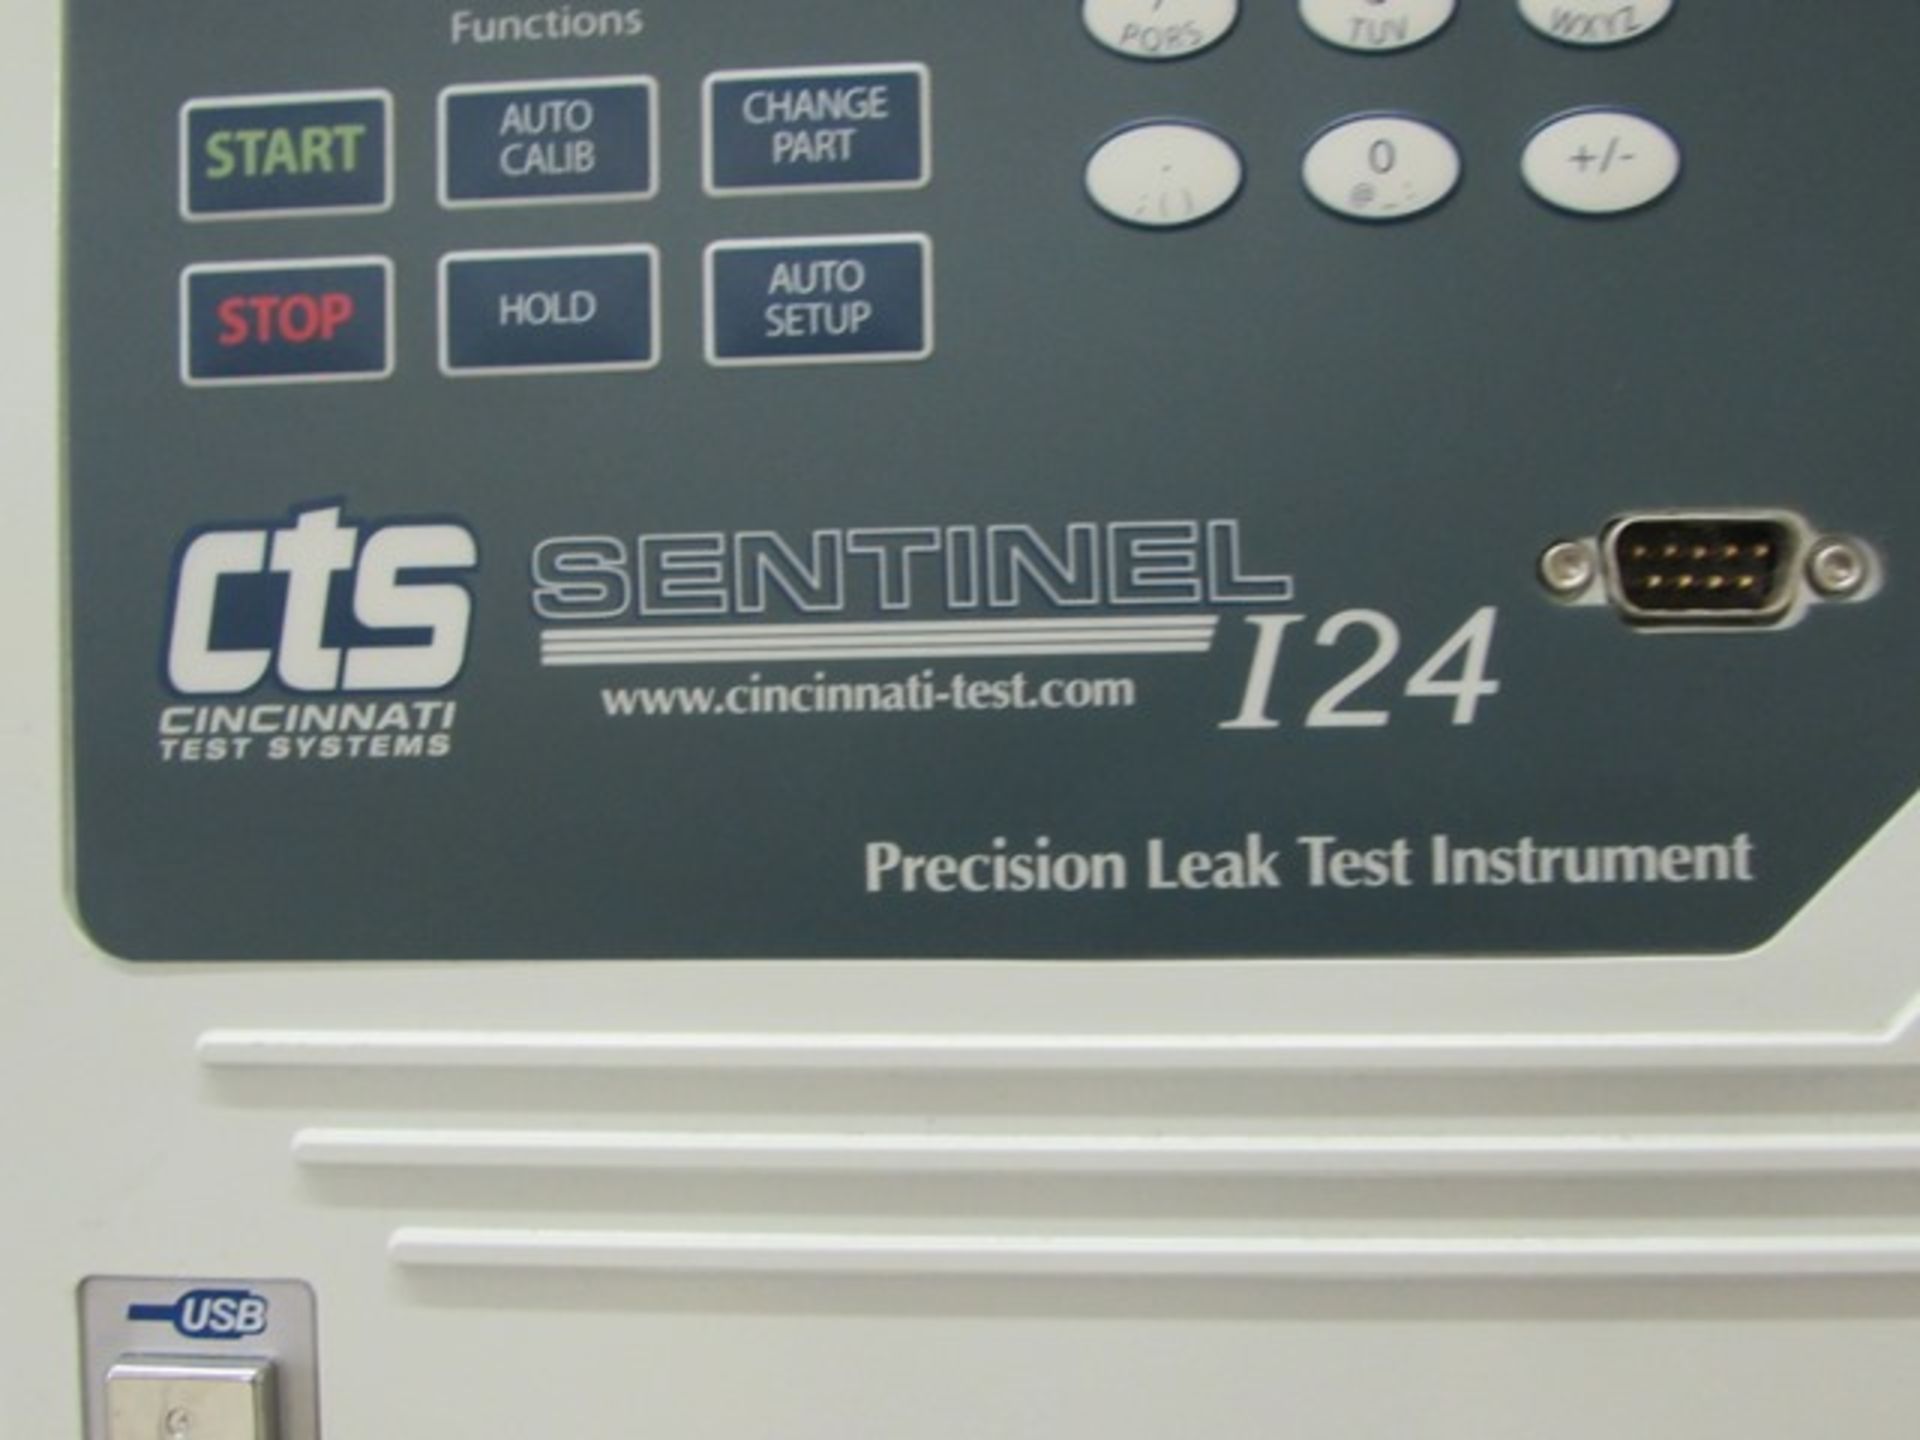 CTS "Sentinel I-24" precision leak tester c/w multi-test configurability, autoo setup feature, - Image 2 of 3